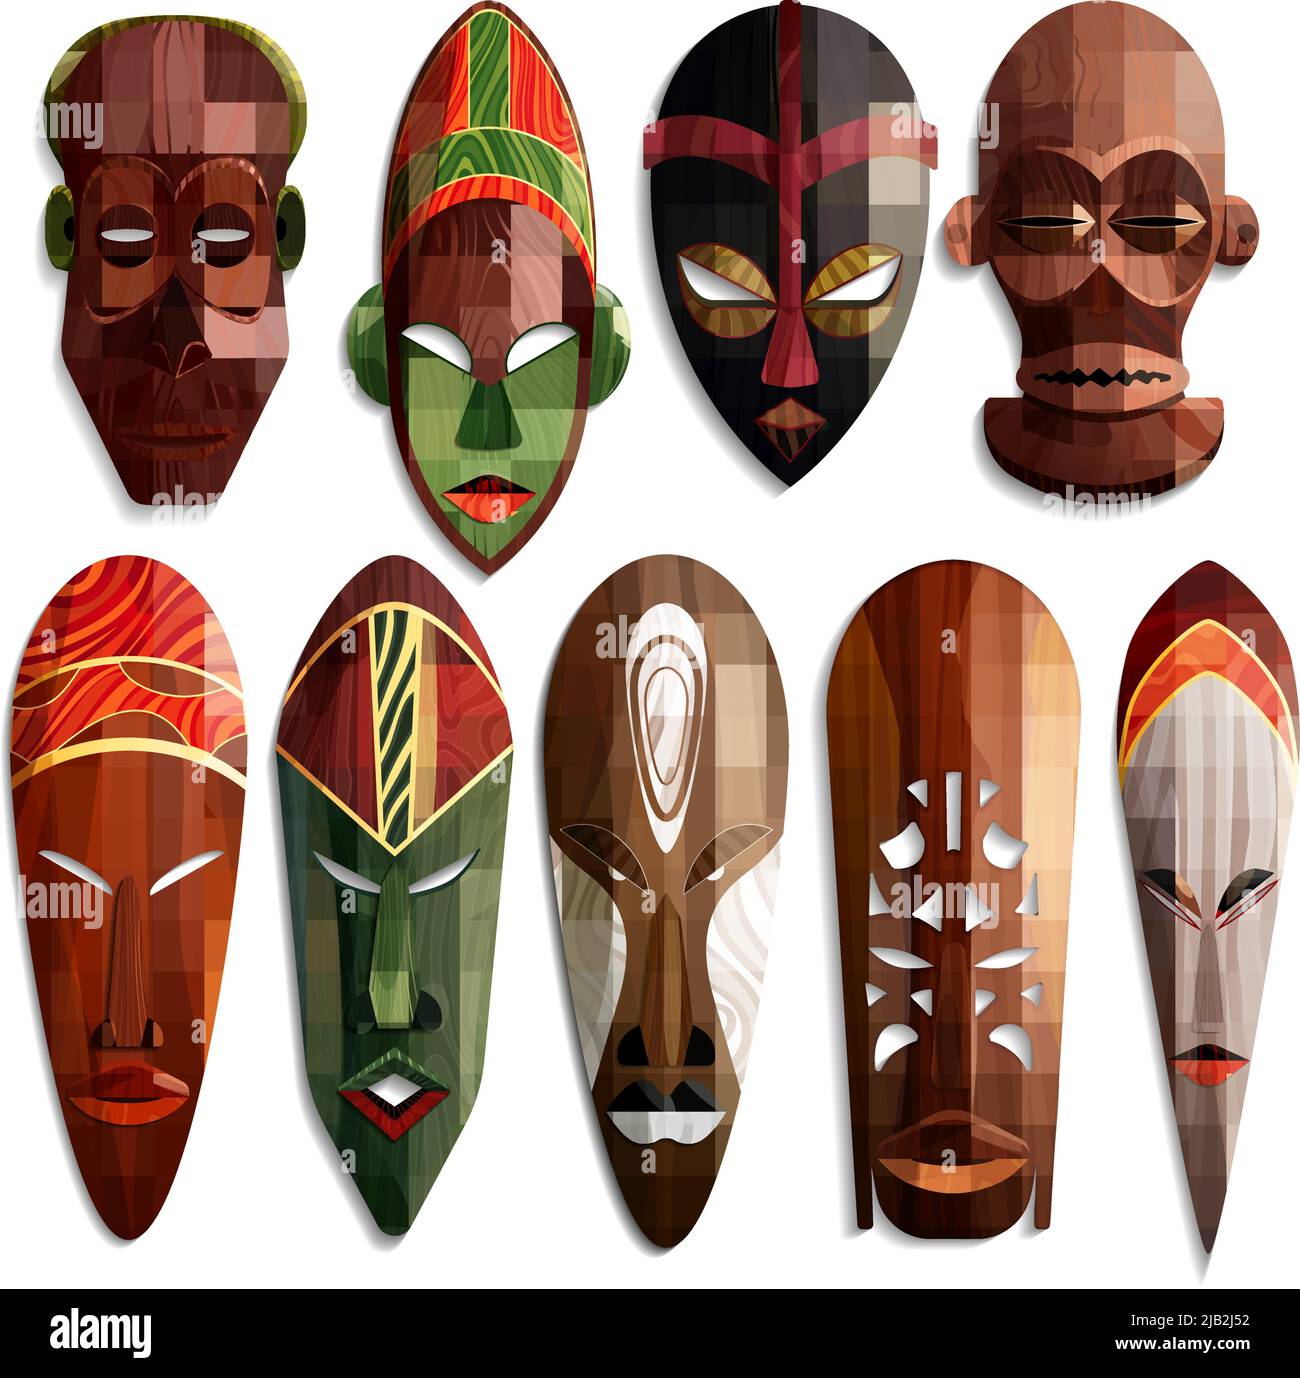 Ensemble de masques africains sculptés réalistes en bois avec ornement coloré sur fond blanc illustration vectorielle isolée Illustration de Vecteur